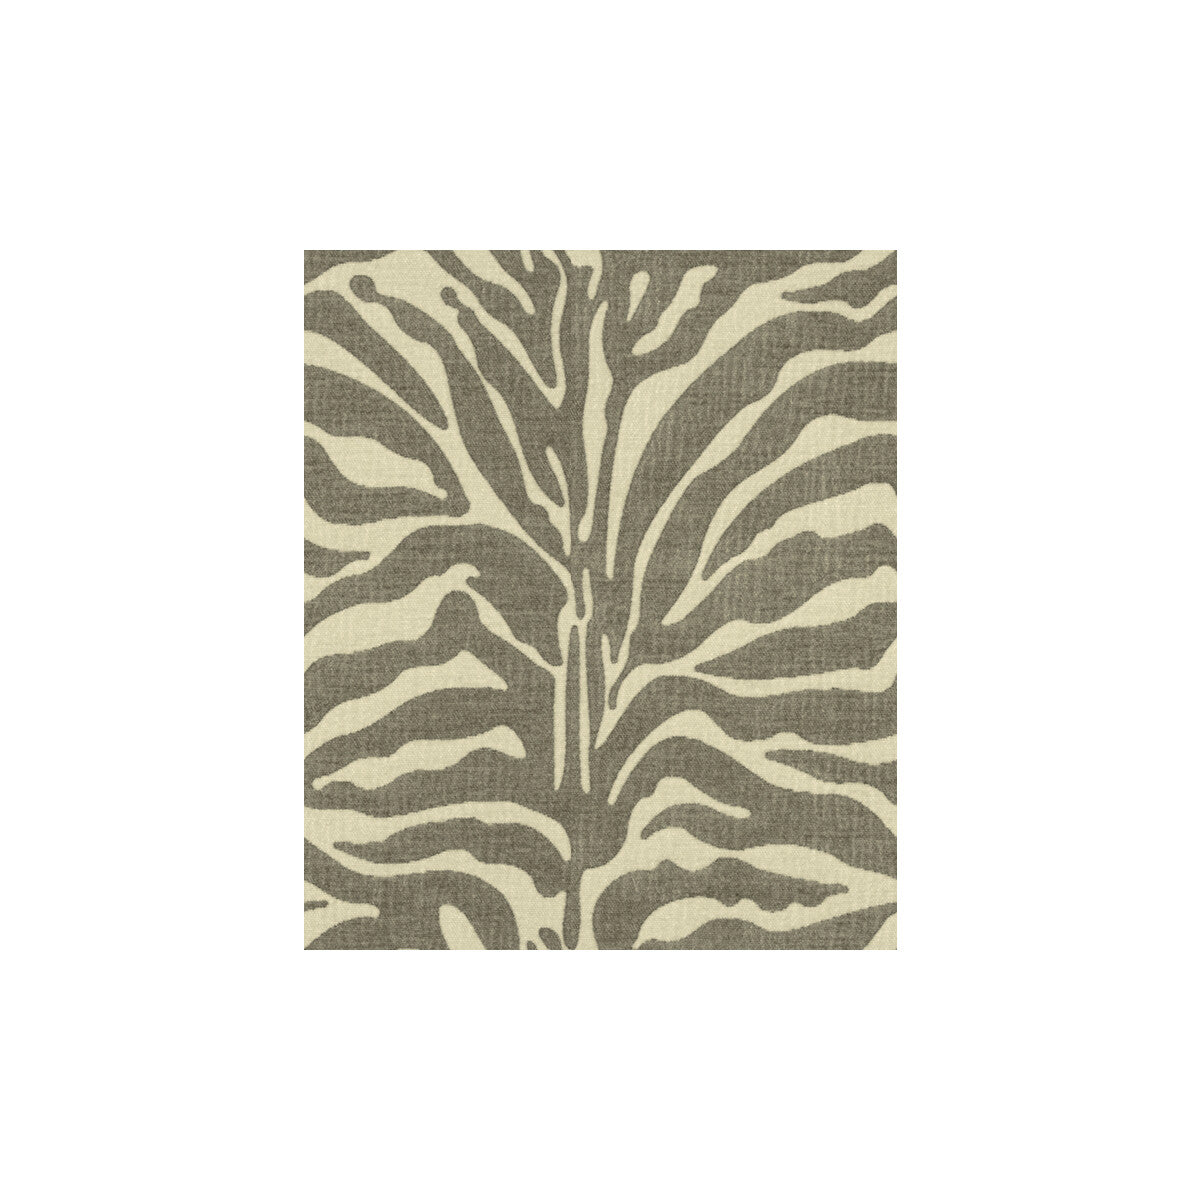 Kravet Design fabric in 32579-11 color - pattern 32579.11.0 - by Kravet Design